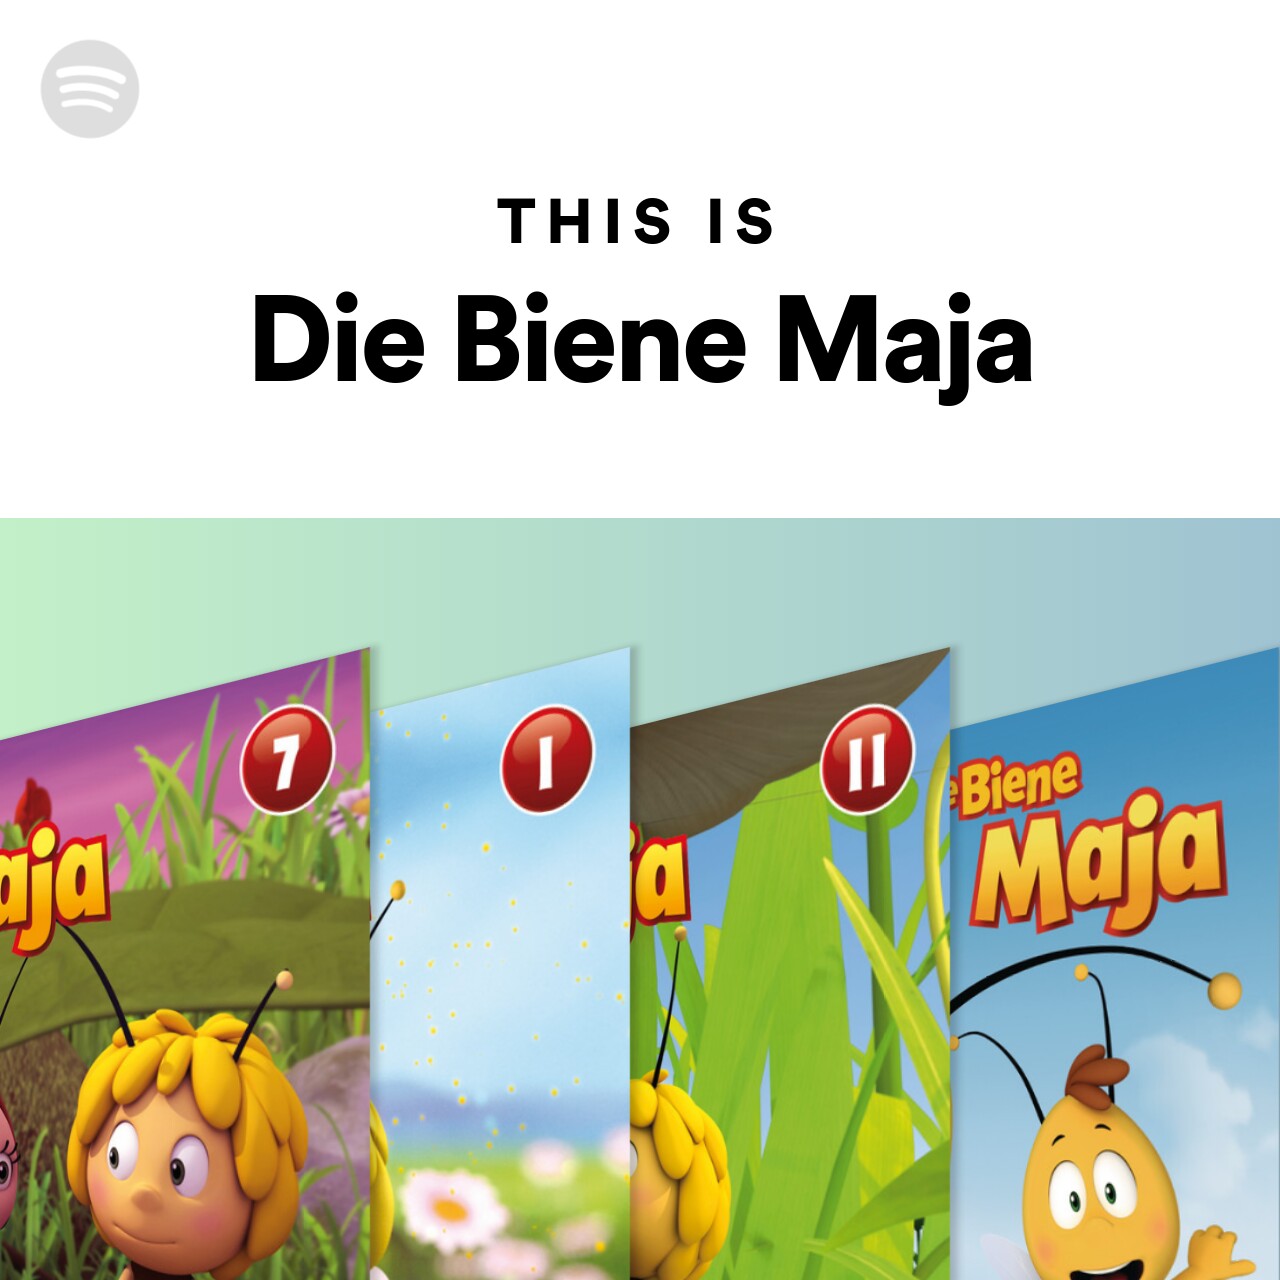 This Is Die Biene Maja